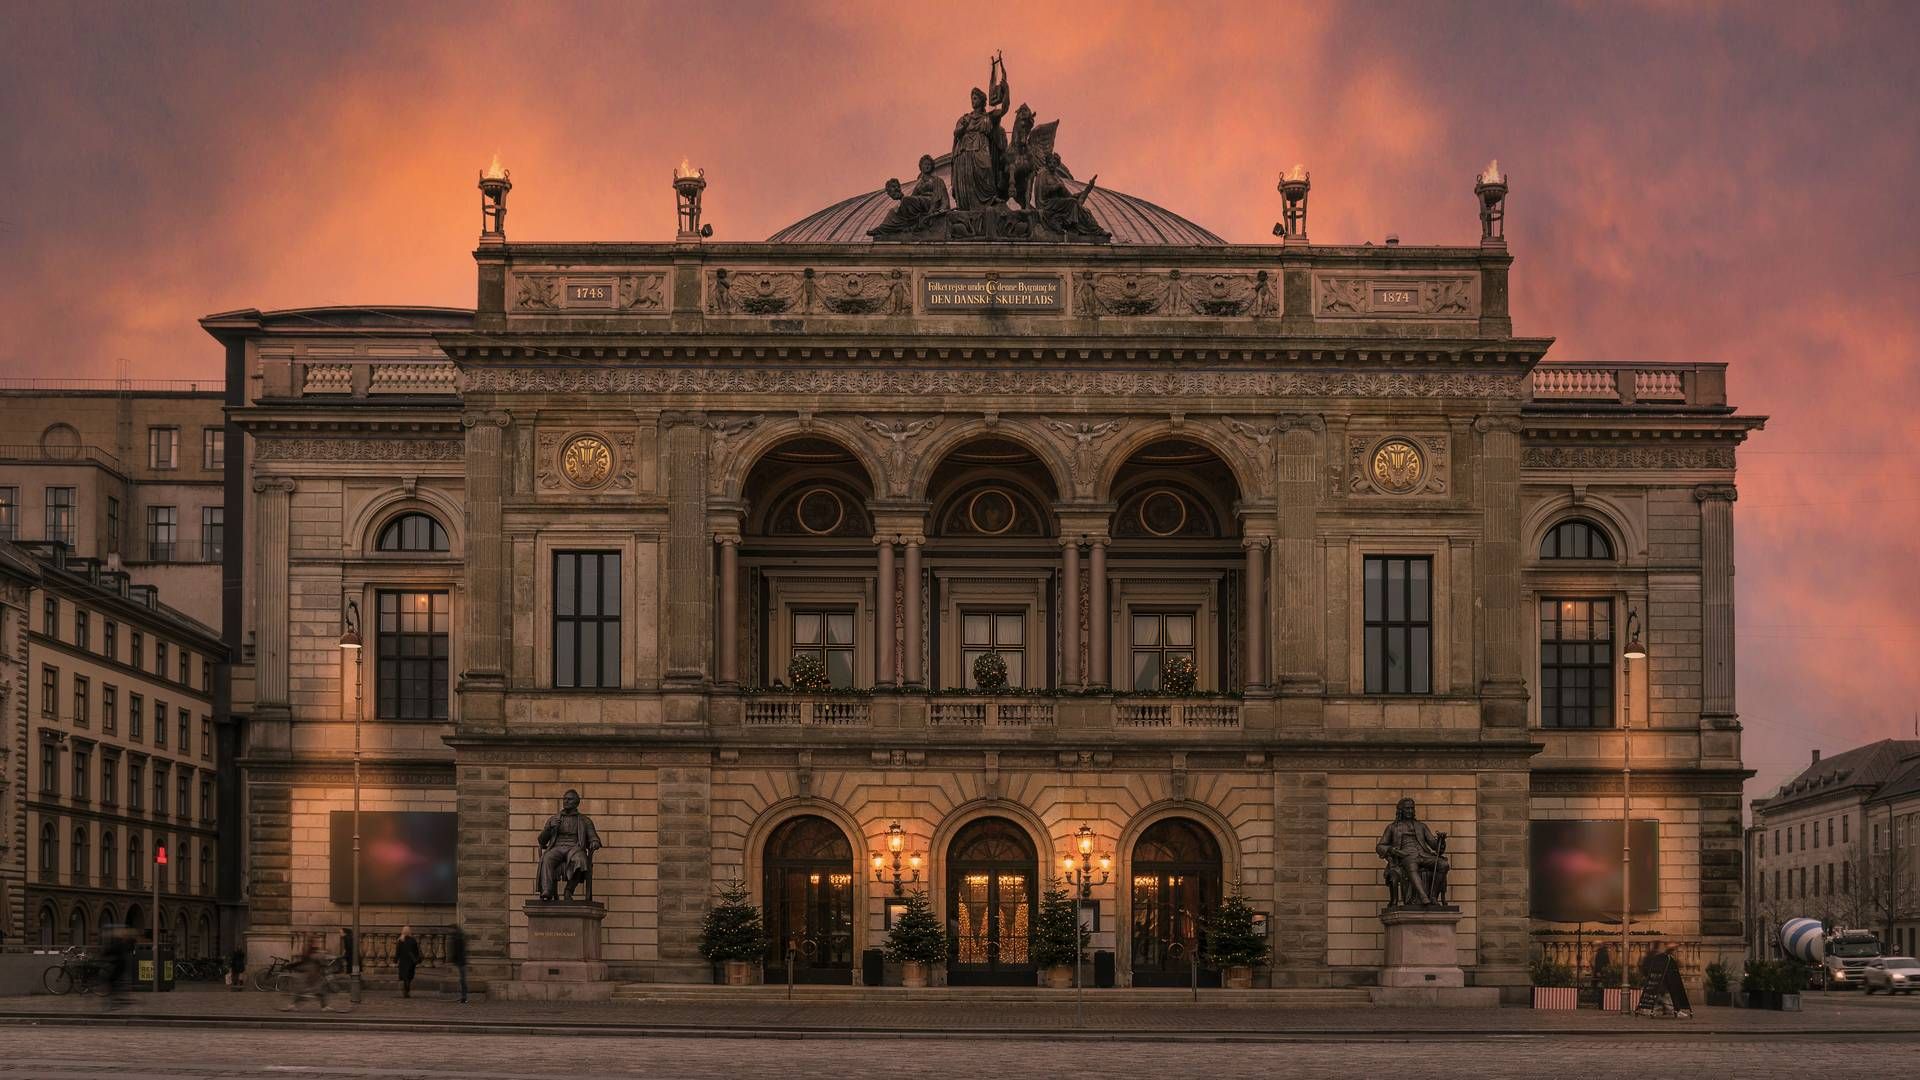 Det har været dyrt at gøre rent efter publikum i bl.a. Det Kongelige Teater i København, der siden maj 2022 har modtaget serviceydelser fra et privat selskab. | Foto: Camilla Winther / Det Kongelige Teater